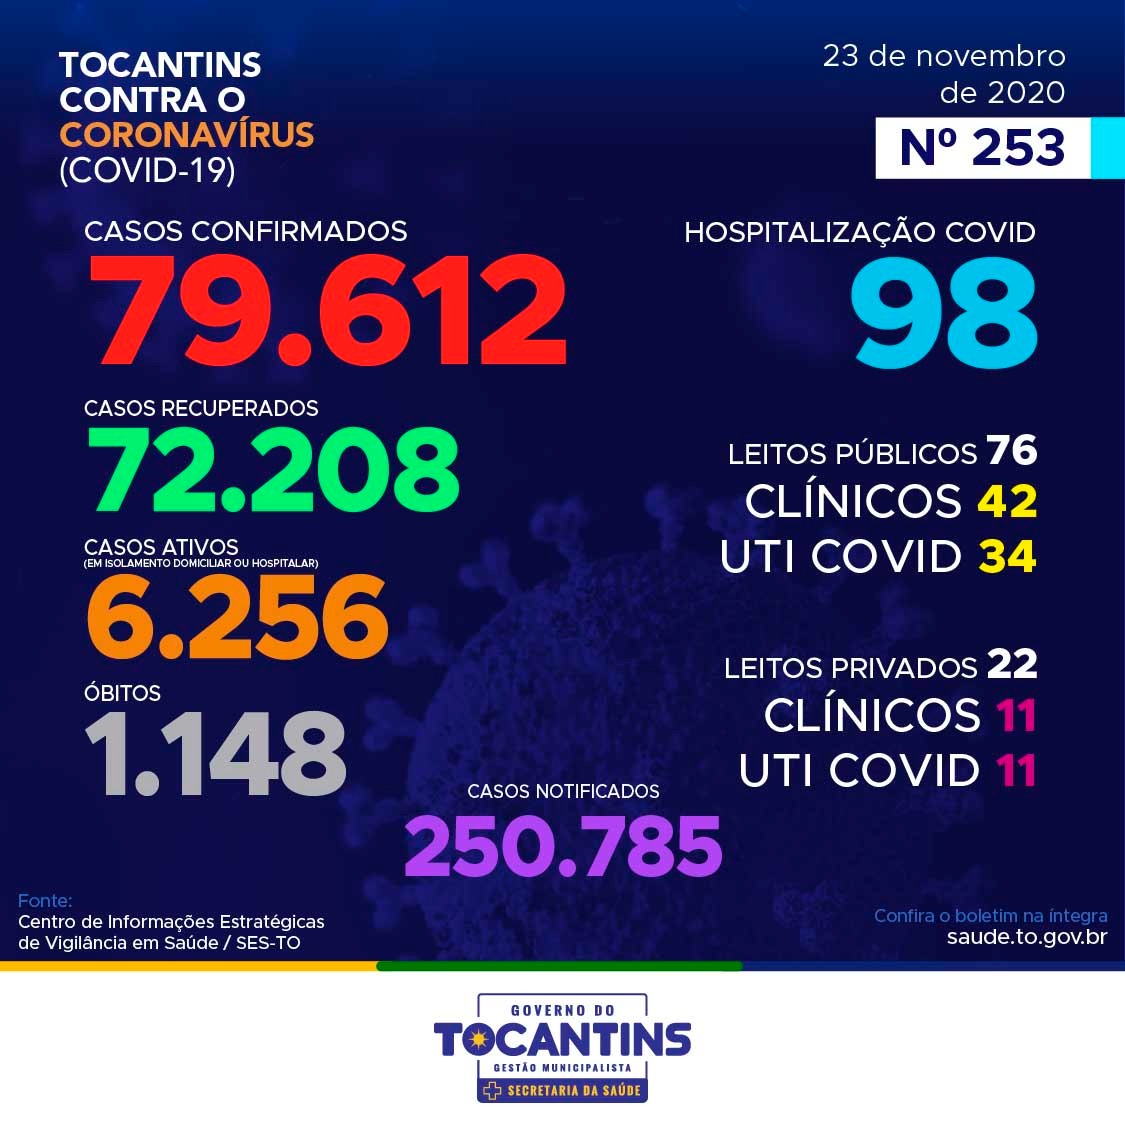 Coronavírus: Tocantins confirma 100 novos casos hoje, destes, 56% estão entre 20 e 39 anos